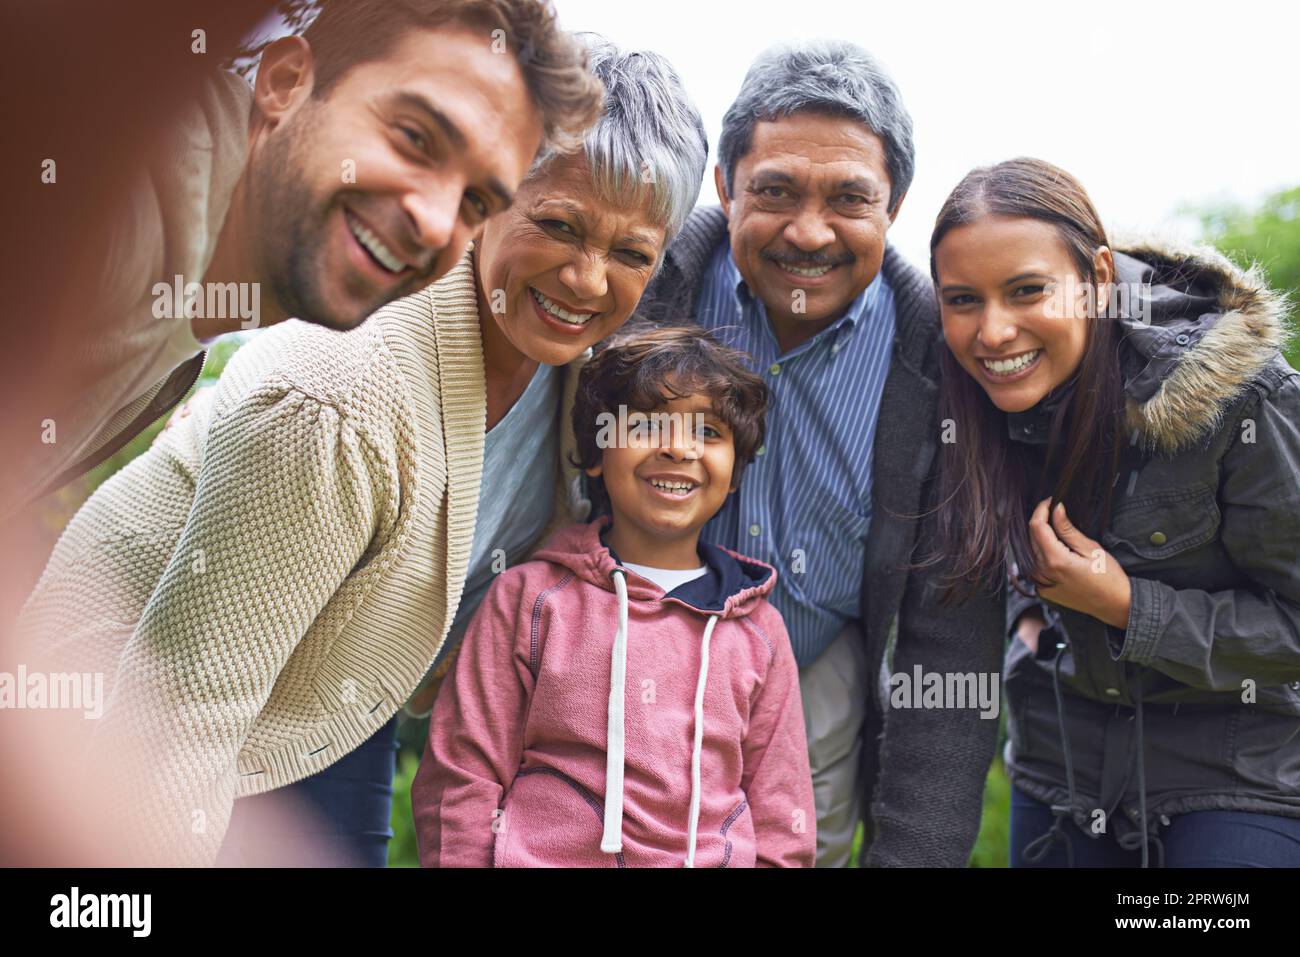 Les moments simples font de grands souvenirs. Une famille multi-générationnelle posant pour un autoportrait Banque D'Images